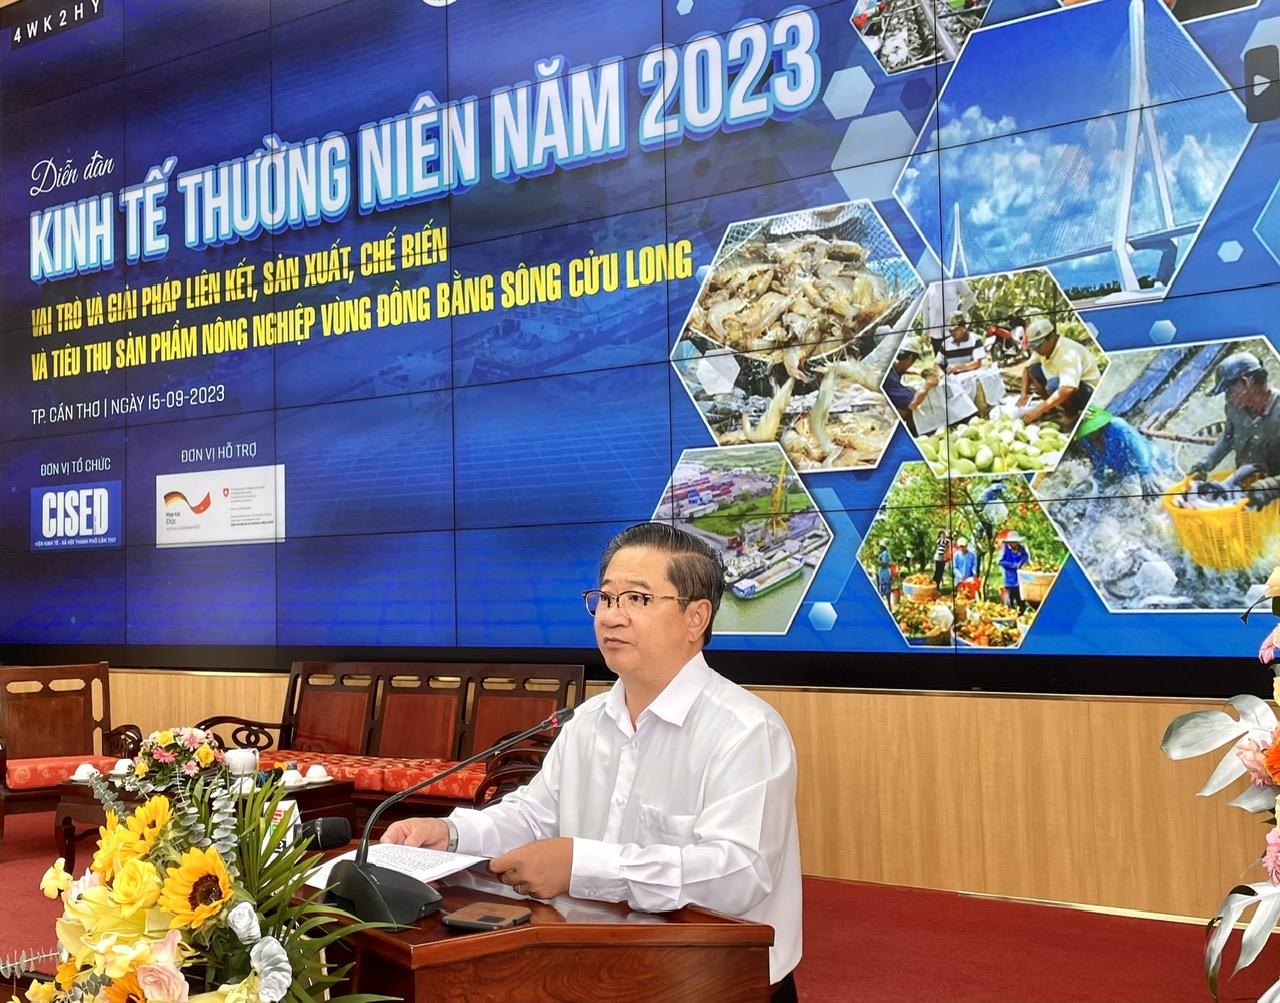 Chủ tịch UBND TP. Cần Thơ Trần Việt Trường, phát biểu tại Diễn đàn kinh tế thường niên TP. Cần Thơ năm 2003 vào trung tuần tháng 9 vừa qua